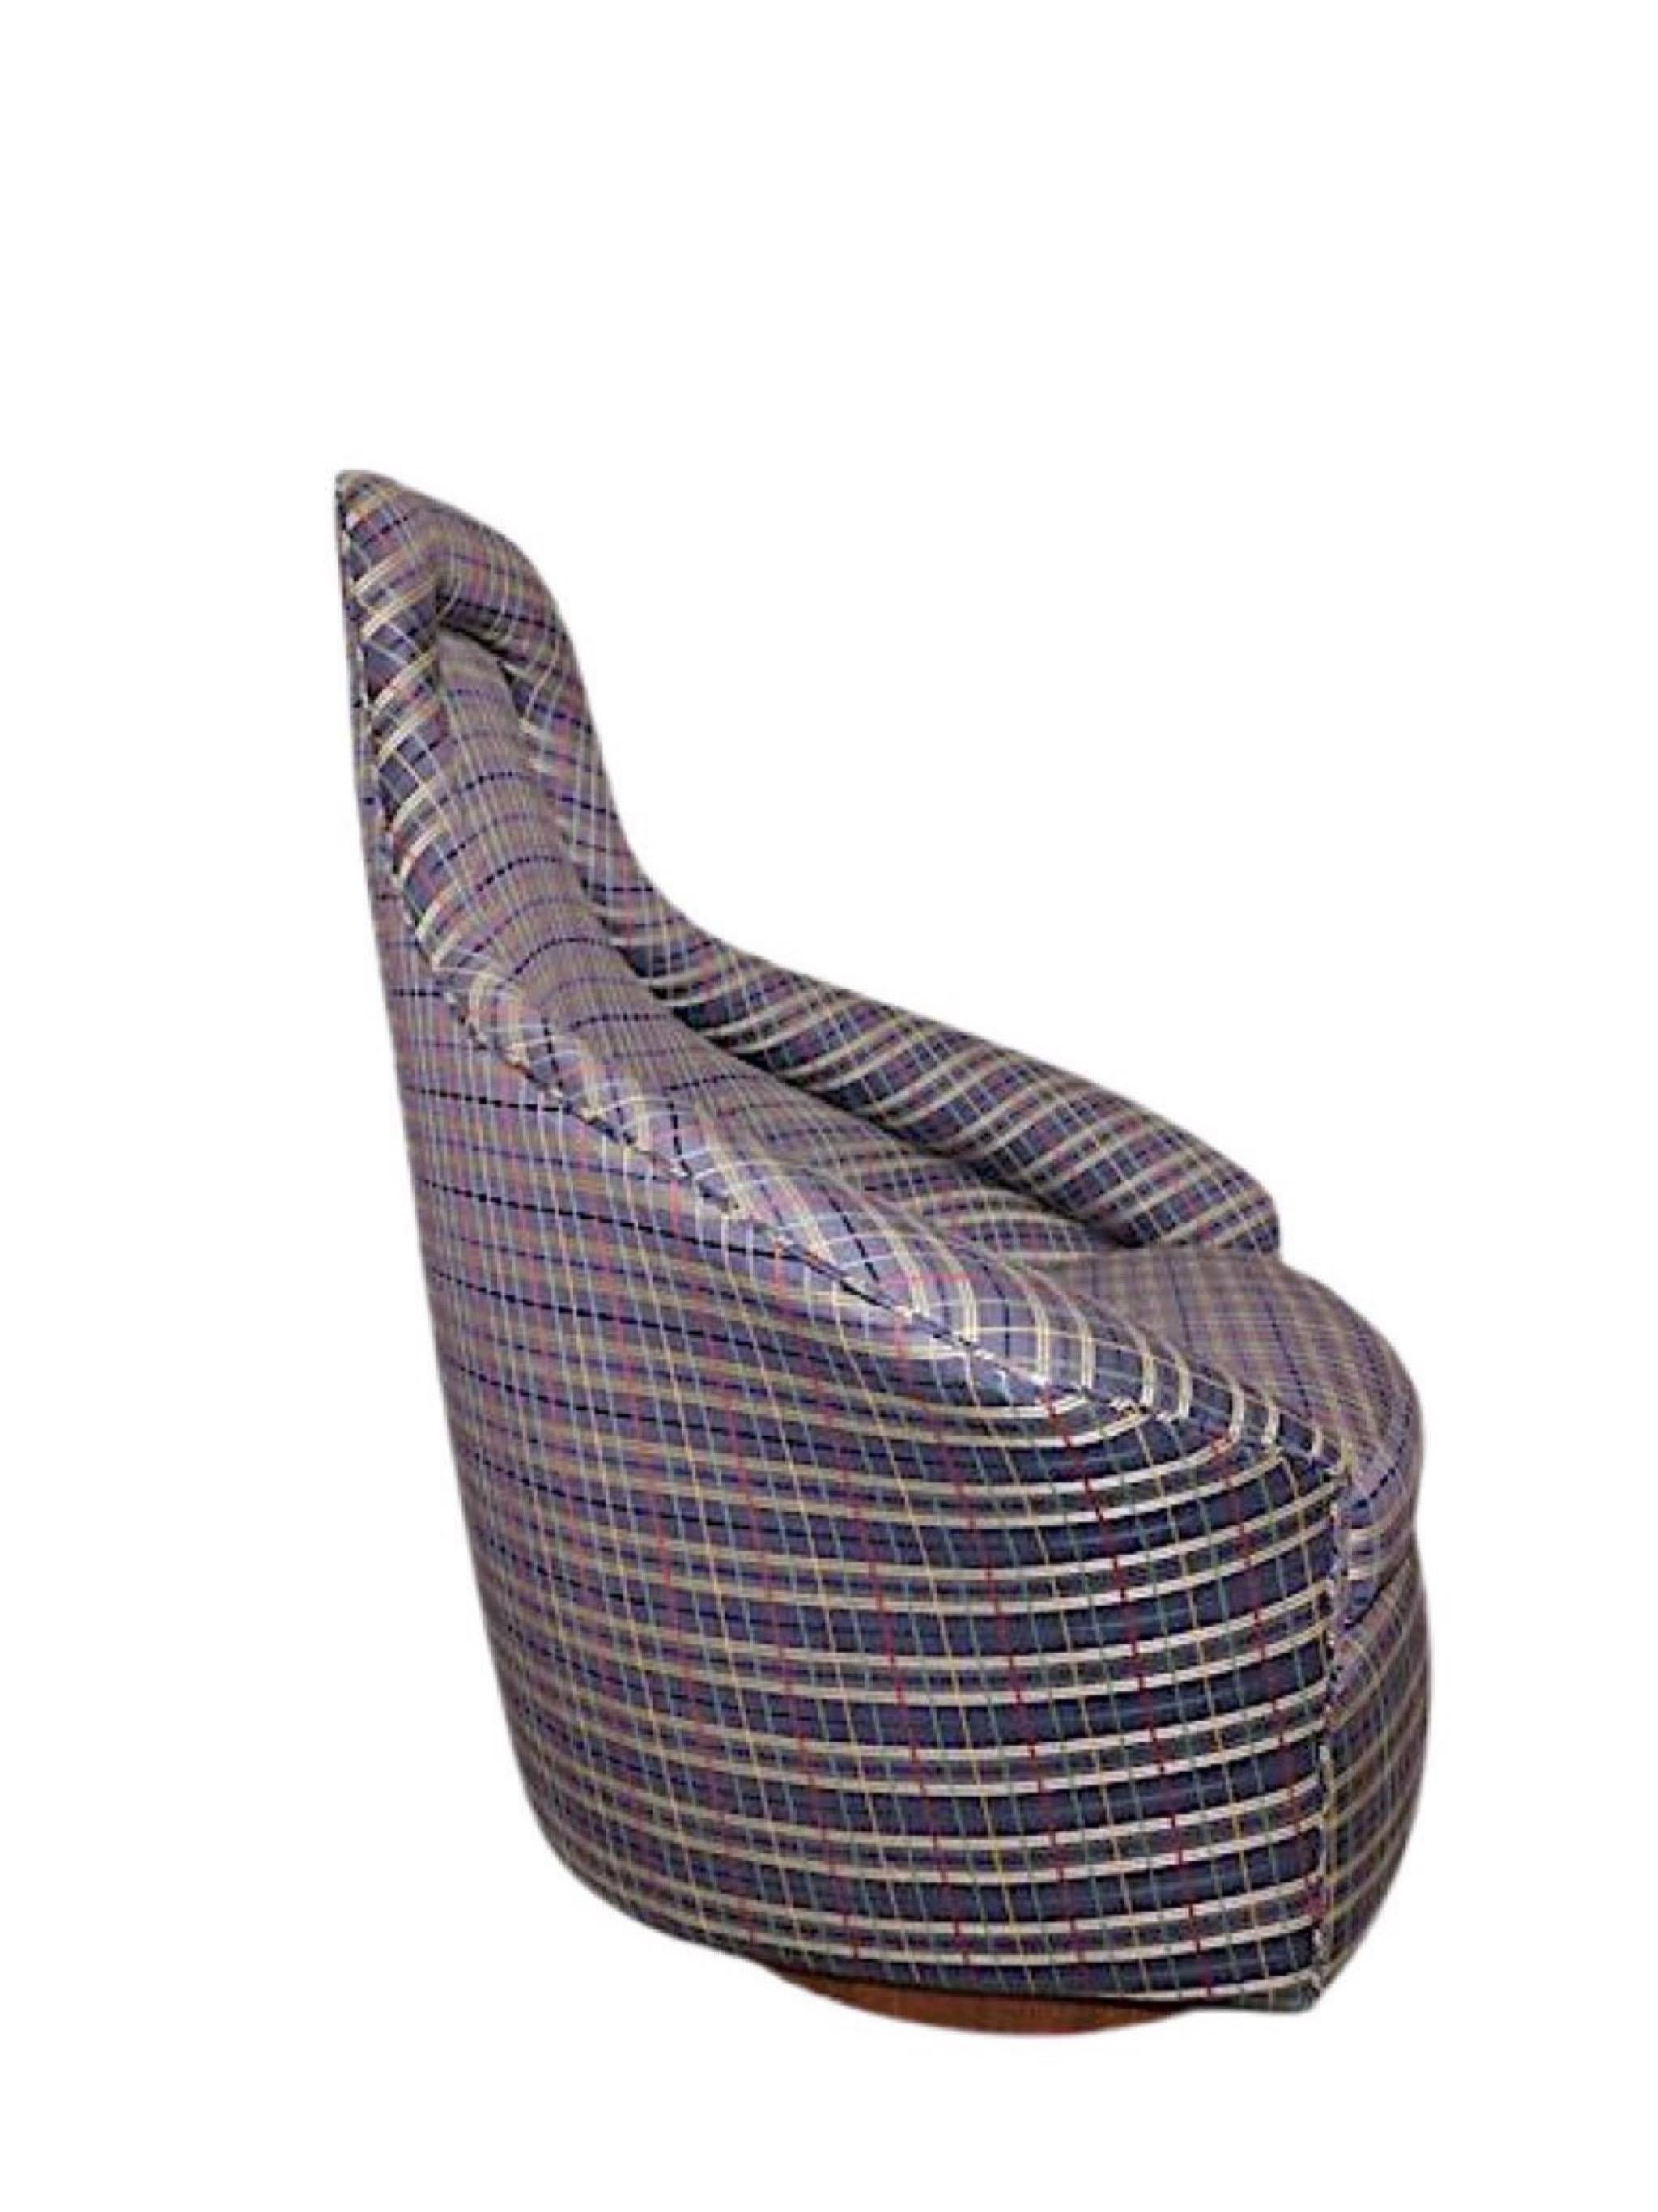 Mid-Century Modern Adrian Pearsall fauteuil de salon pivotant Rock, moderne du milieu du siècle dernier en vente